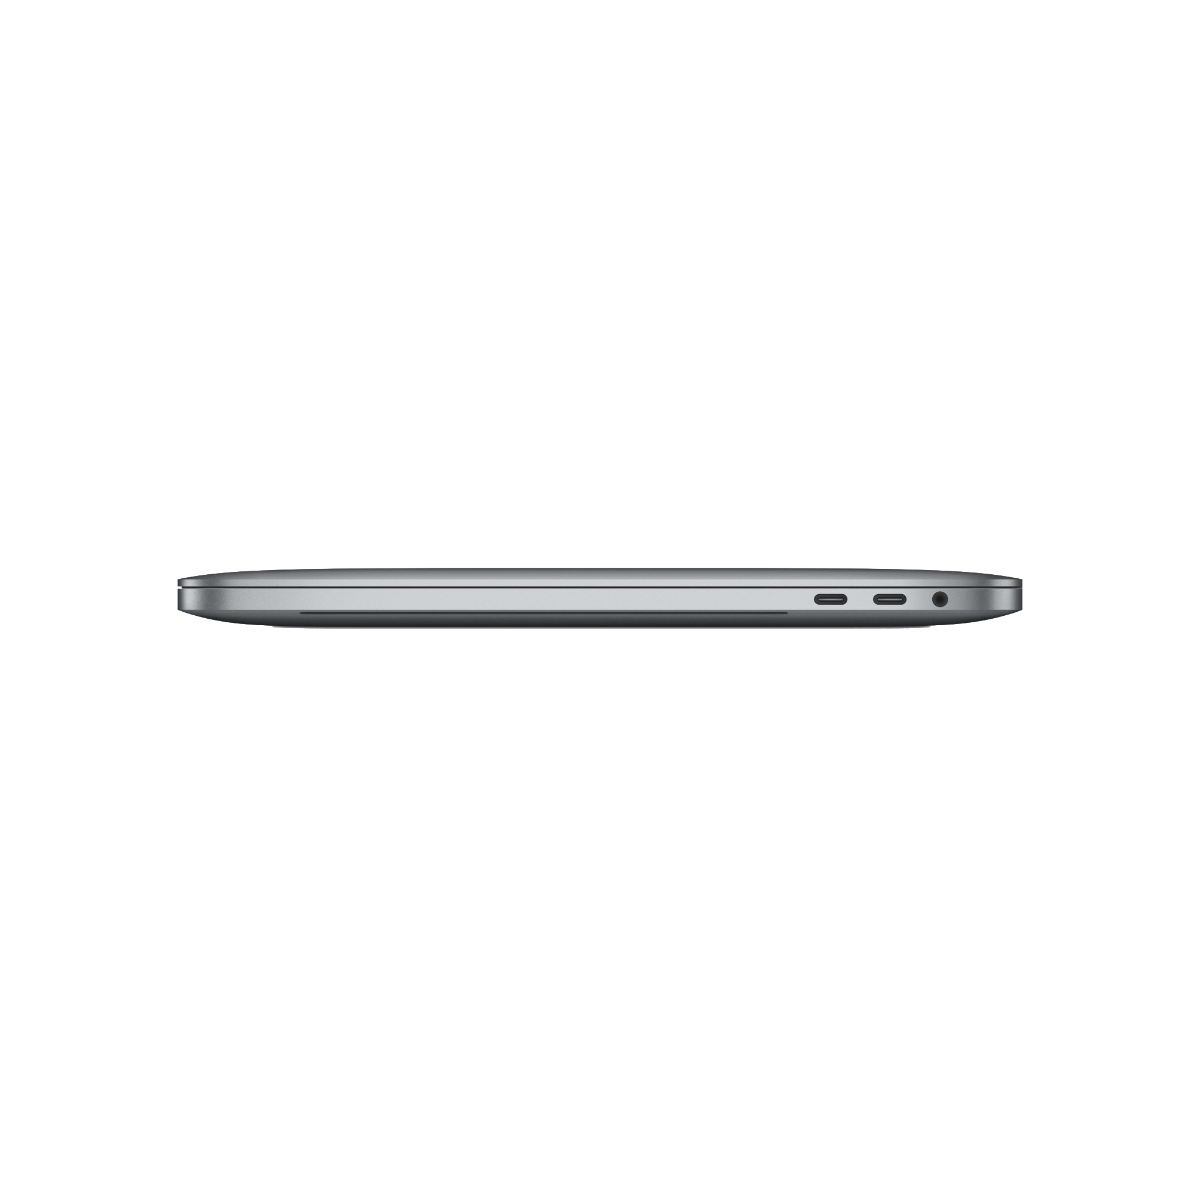 Refurbished MacBook Pro Touchbar 13" i7 2.7 Ghz 16GB 512GB - test-product-media-liquid1